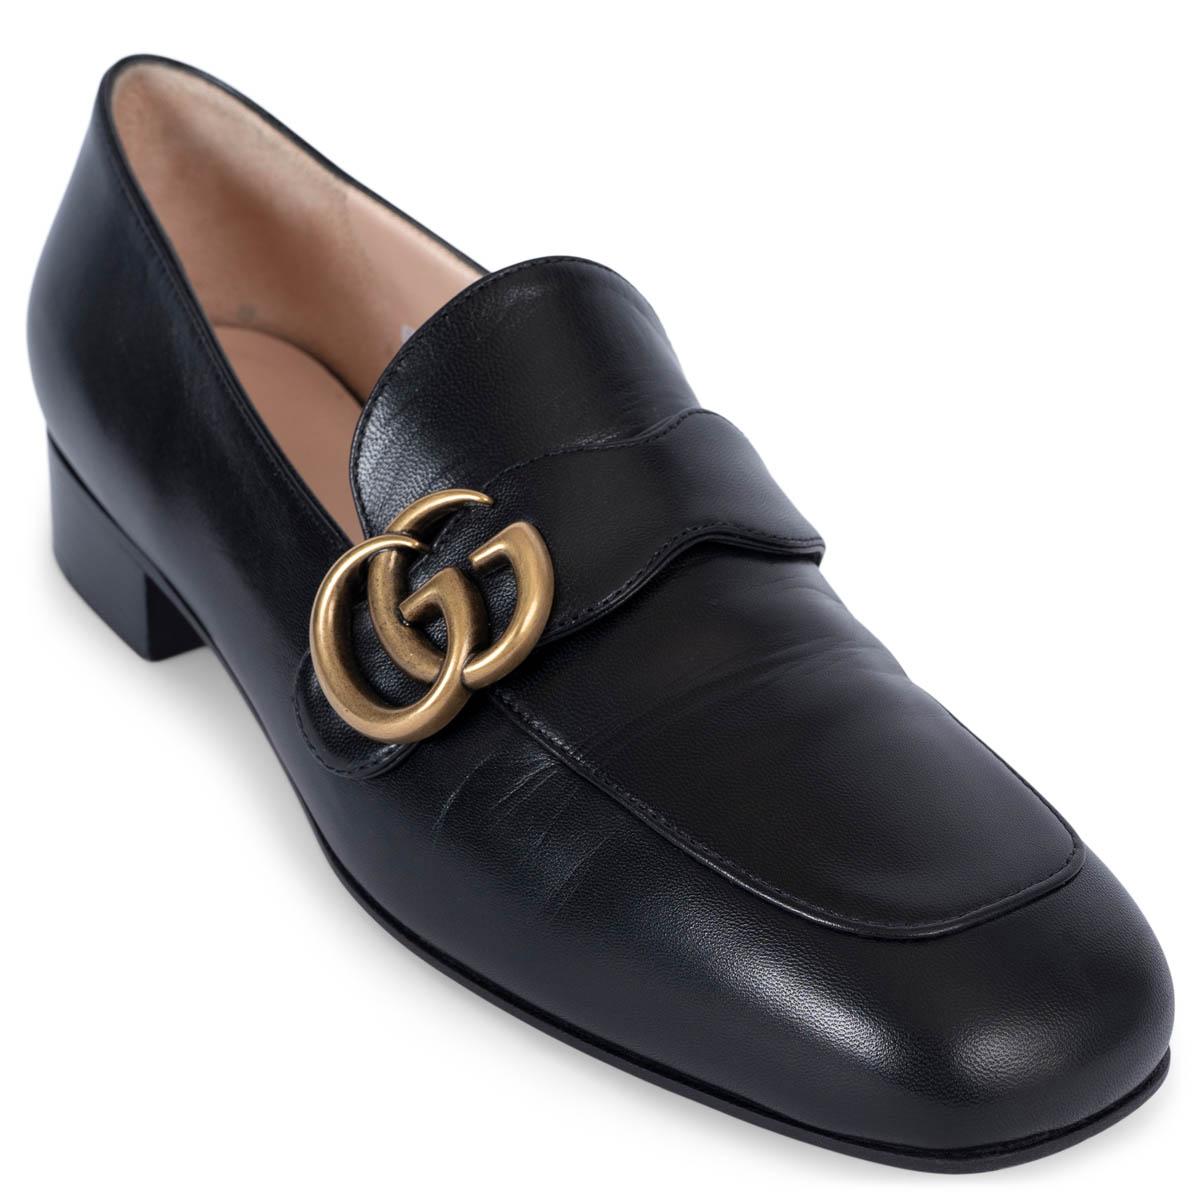 GGCI cuir noir GG MARMONT Mocassins Chaussures 38 en vente 2